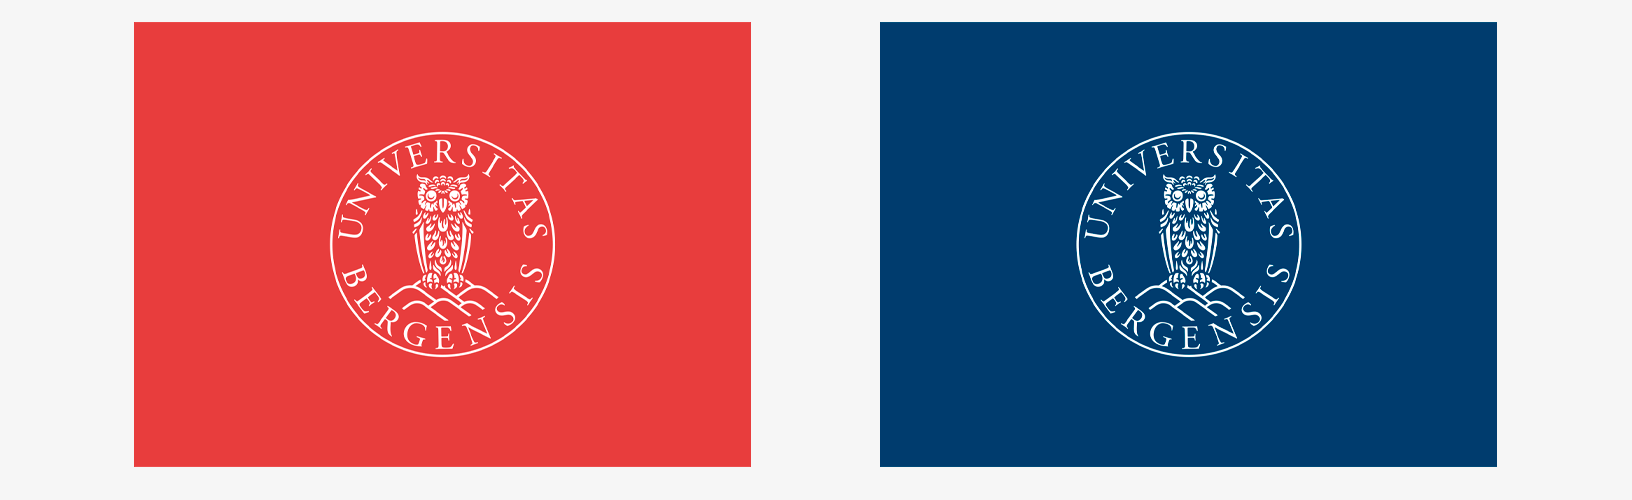 Viser talekort i rødt og blått med UiBs emblem i hvit. 